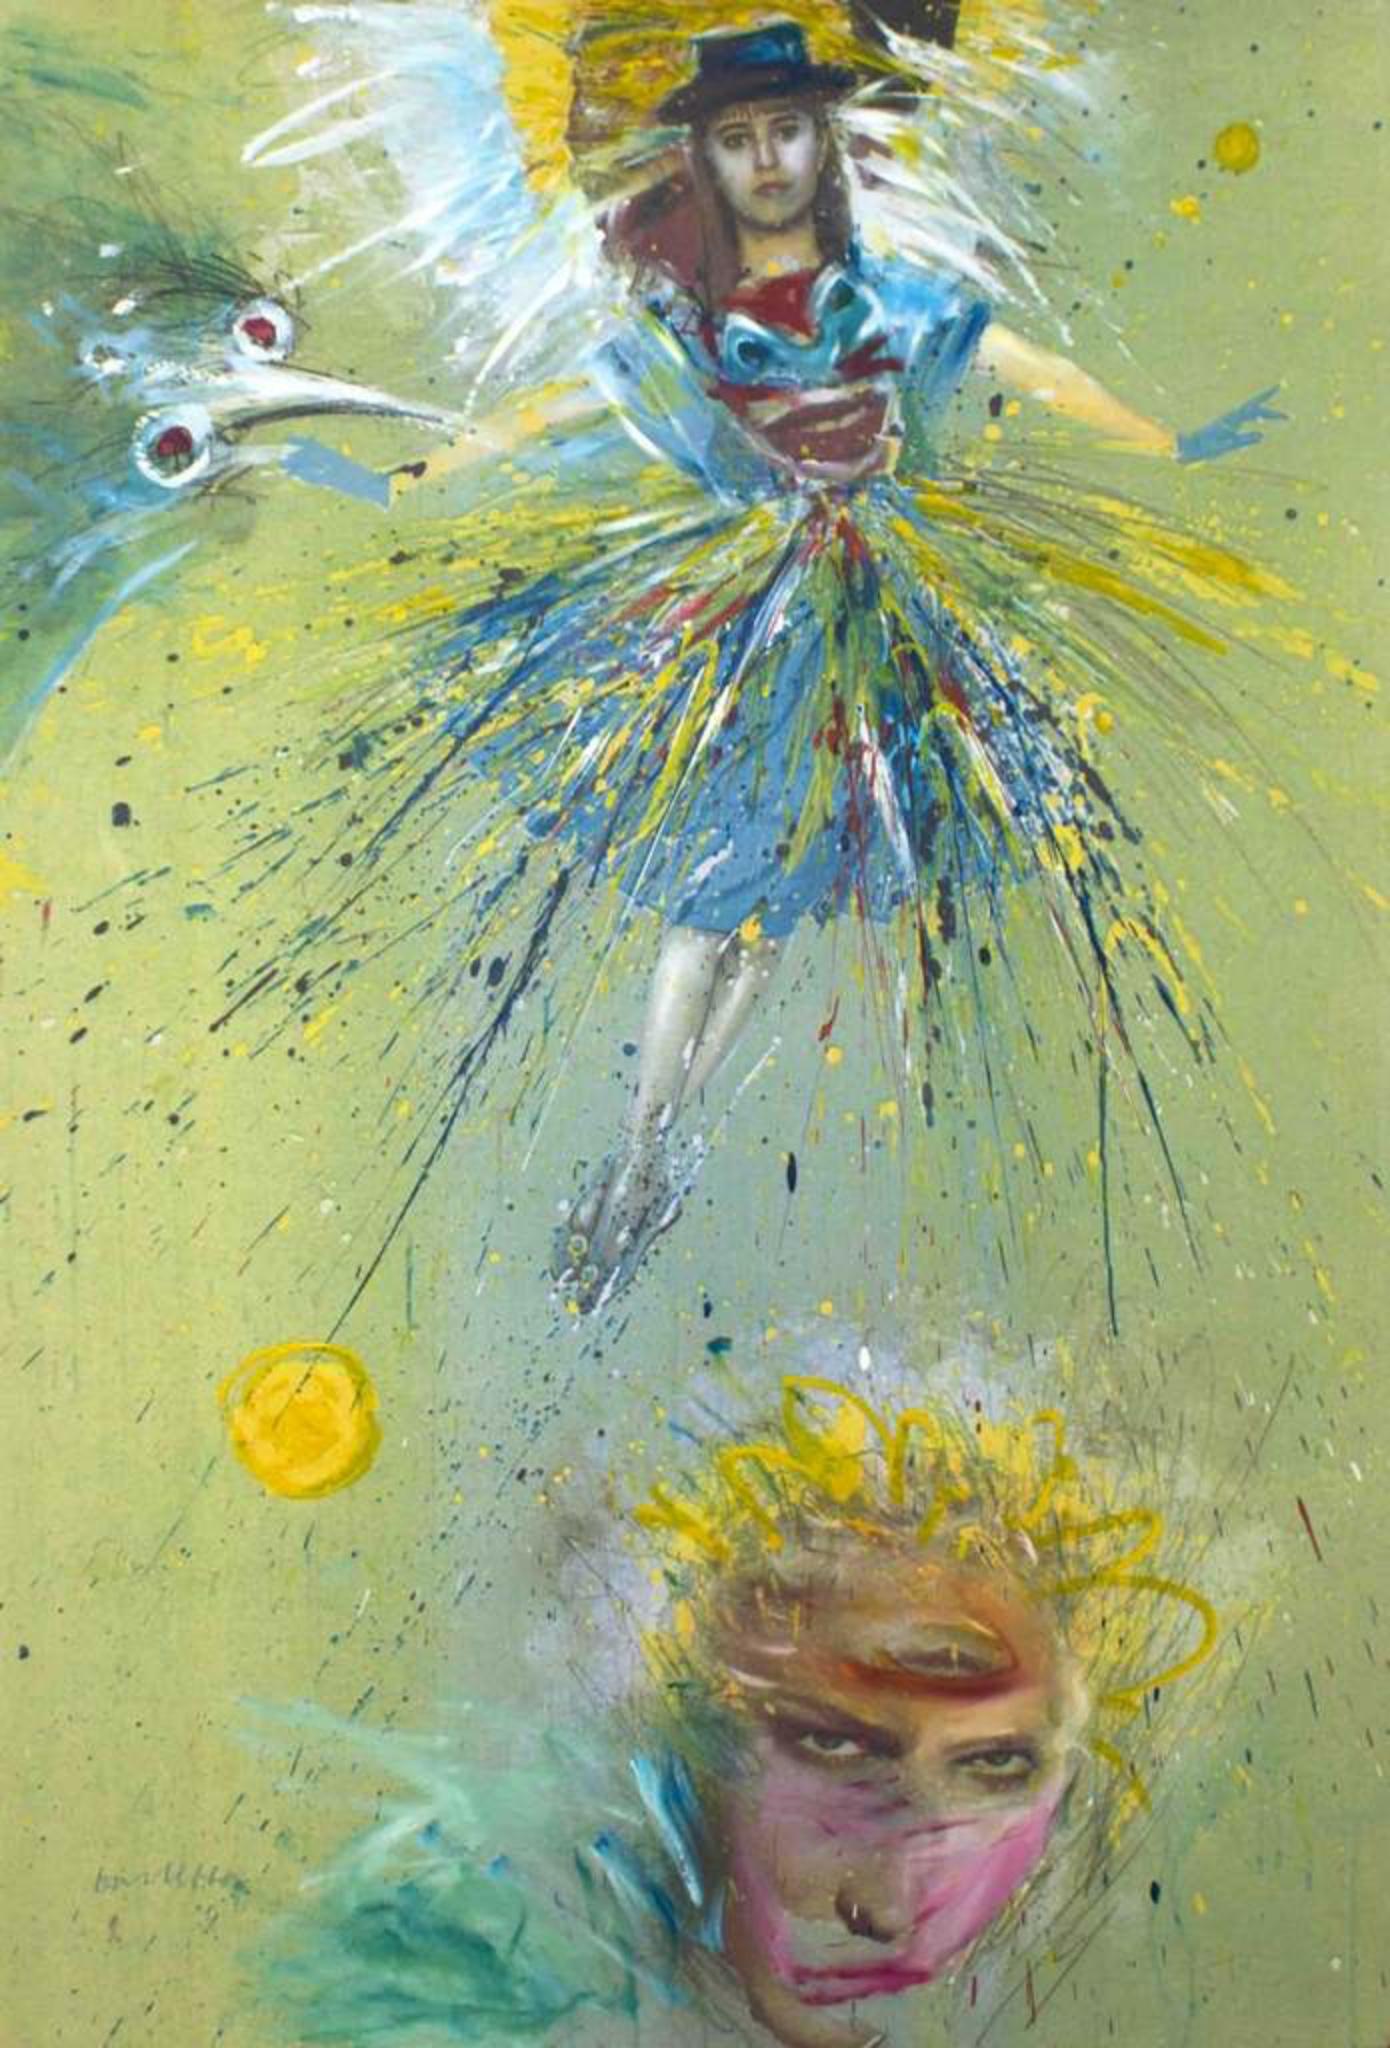 Cirque du Soleil n.20 ist ein zeitgenössisches Kunstwerk von Sergio Barletta aus dem Jahr 1995.

Handsigniert am unteren Rand.

Gemischte Technik und Collage auf Leinwand

Inklusive Rahmen: 142 x 97 cm
